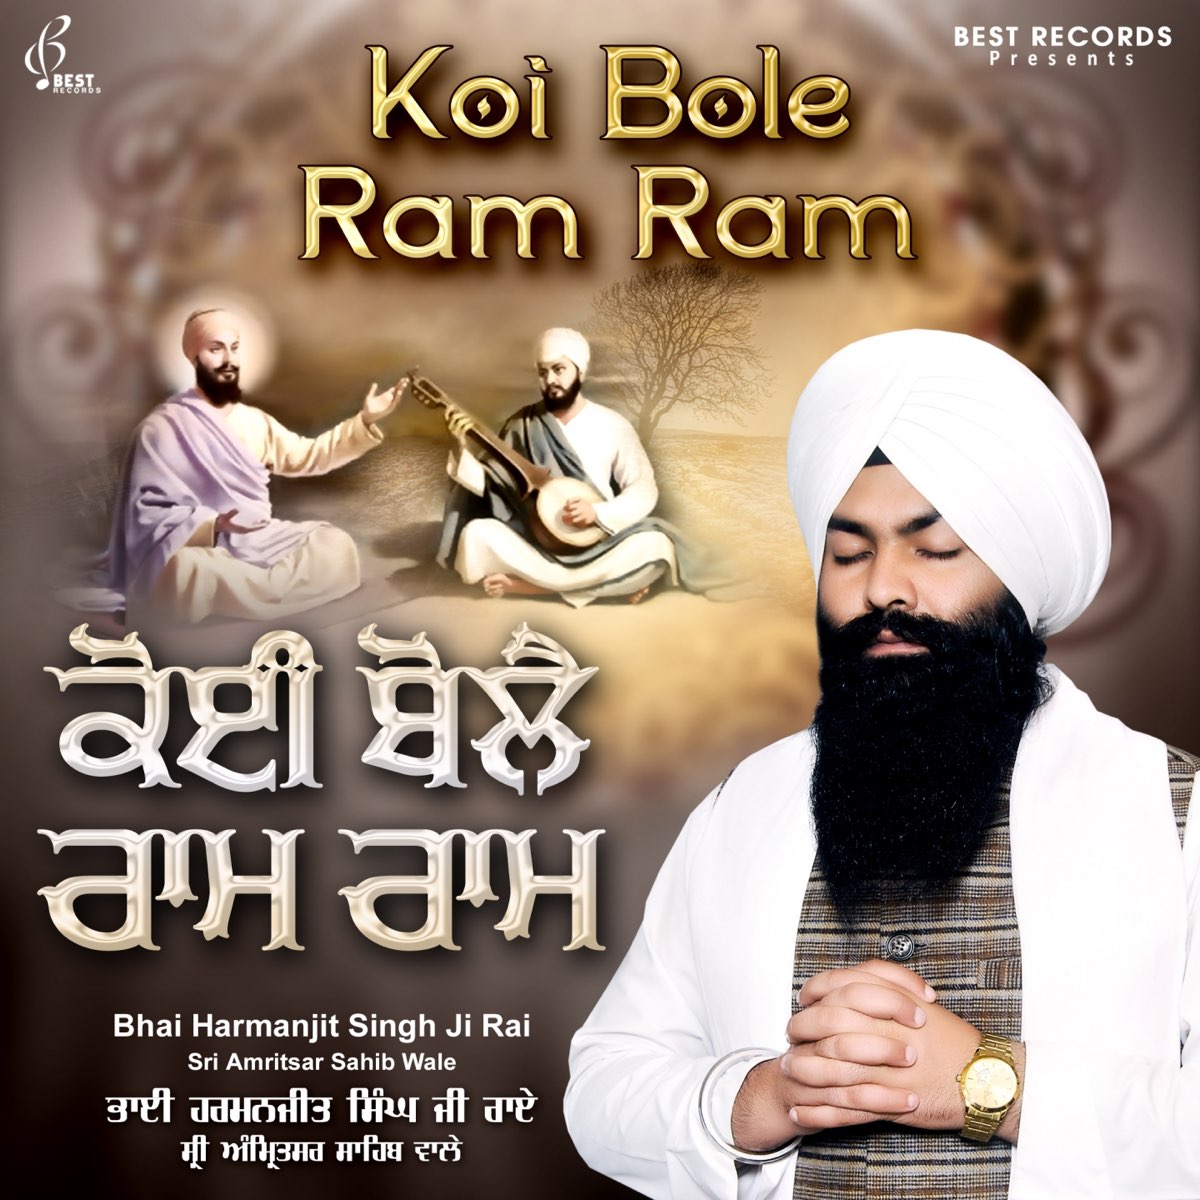 Koi Bole Ram Ram – Album par Bhai Harmanjit Singh JI Rai – Apple Music